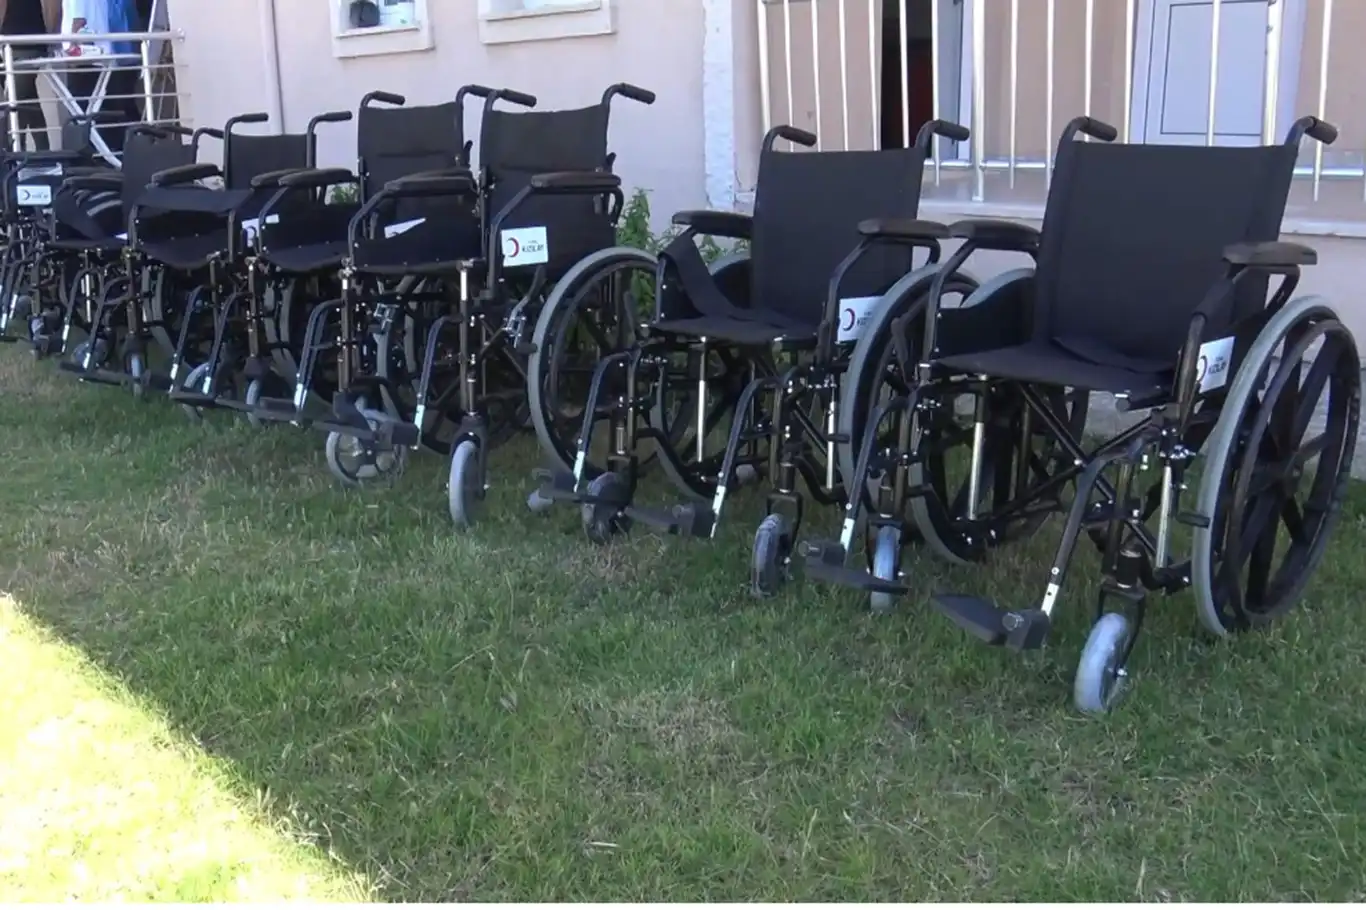 Silopi’de 9 engelliye tekerlekli sandalye dağıtıldı